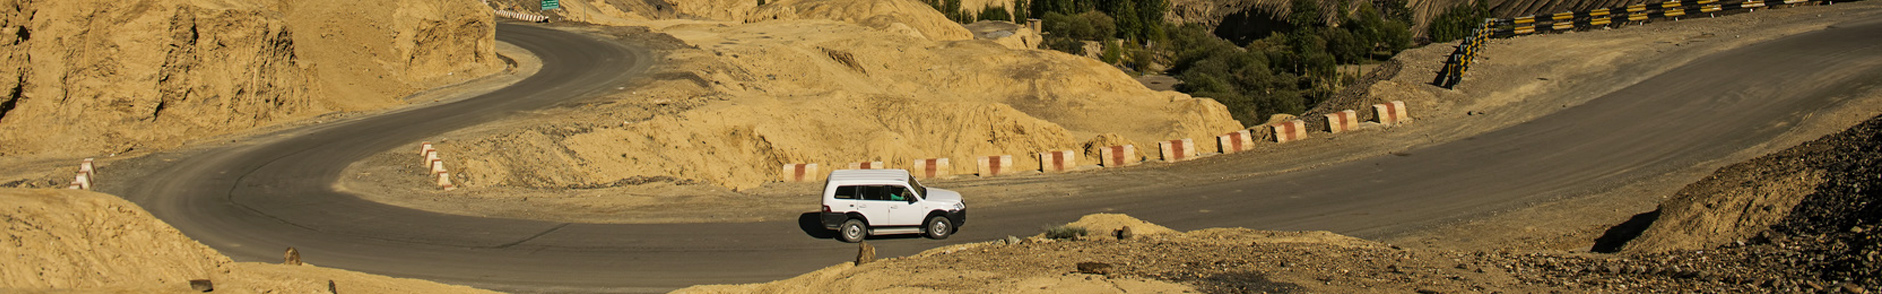 India Jeep Safari Tours